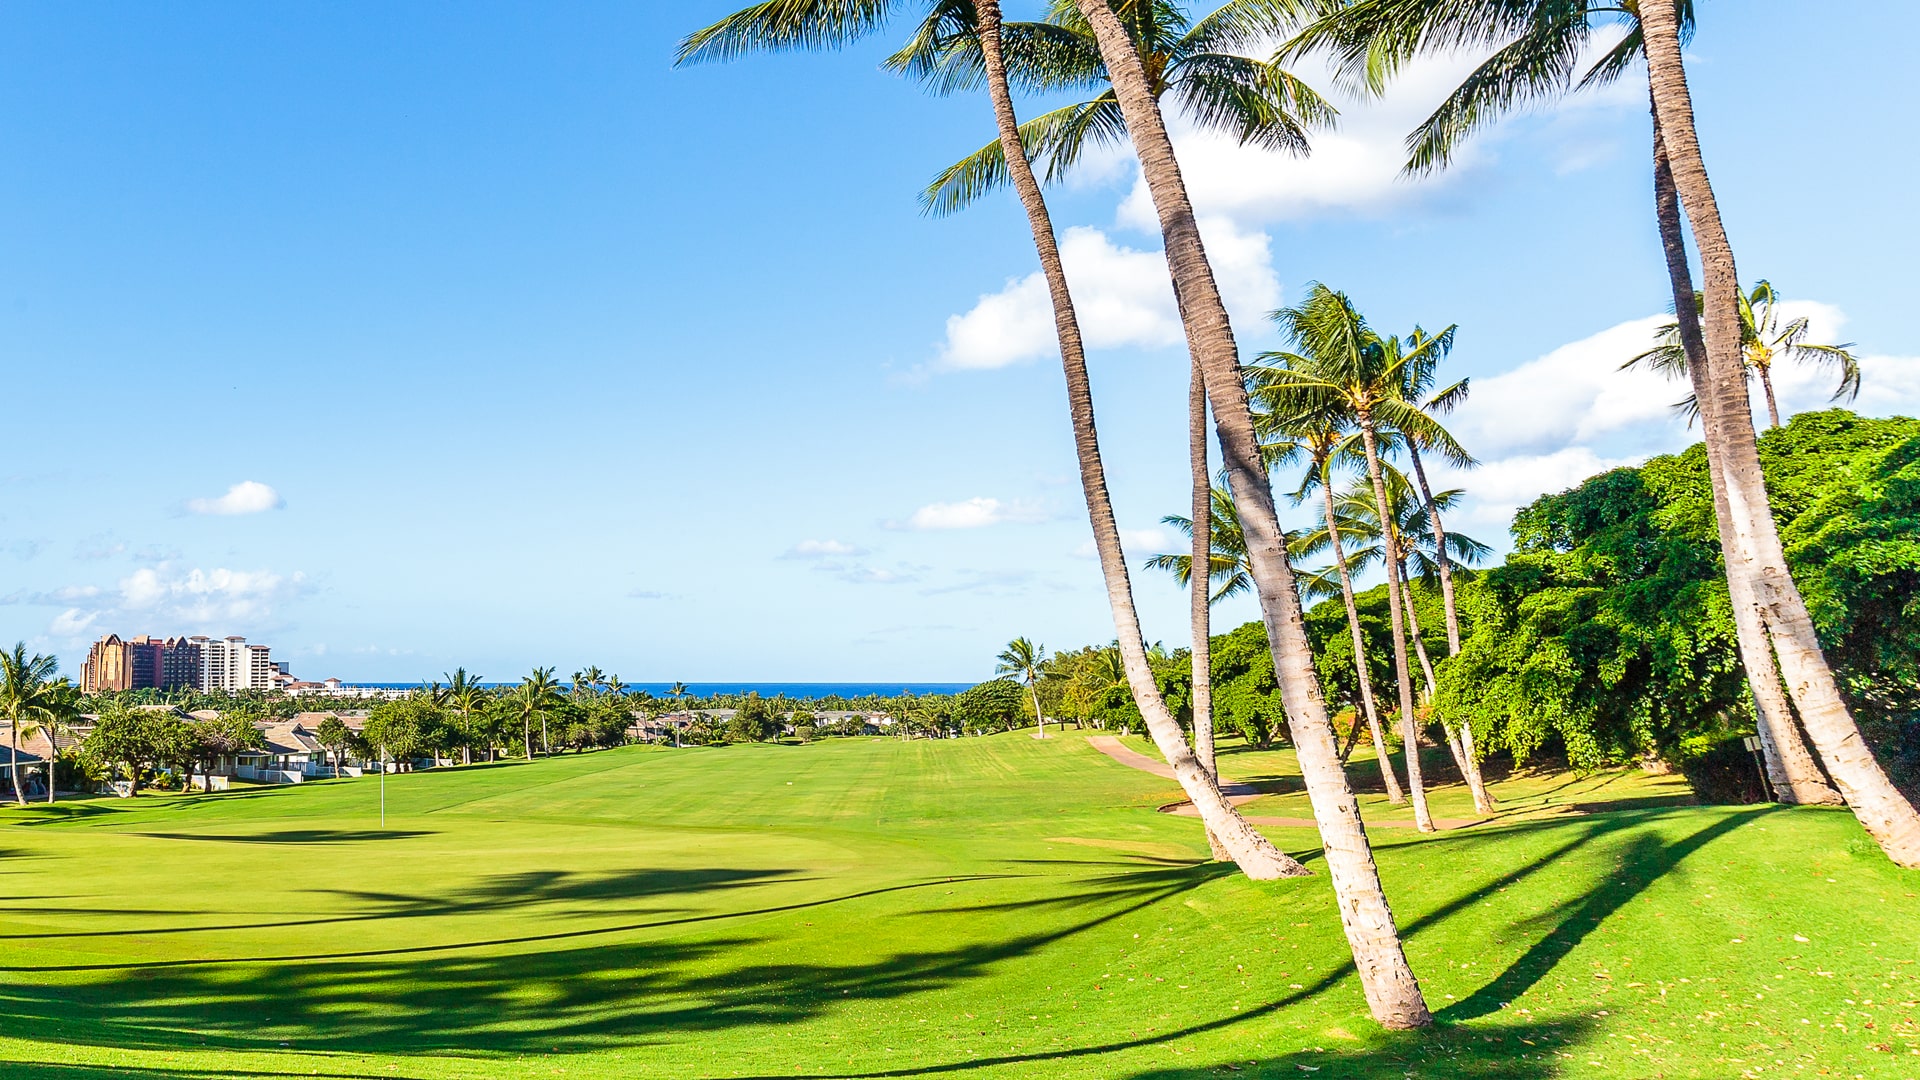 ハワイオアフ島のゴルフ 場予約 ワイキキのホテルからの送迎 1人予約 オプショナルツアーなら40年の実績を持つタチバナエンタープライズへ タチバナエンタープライズ